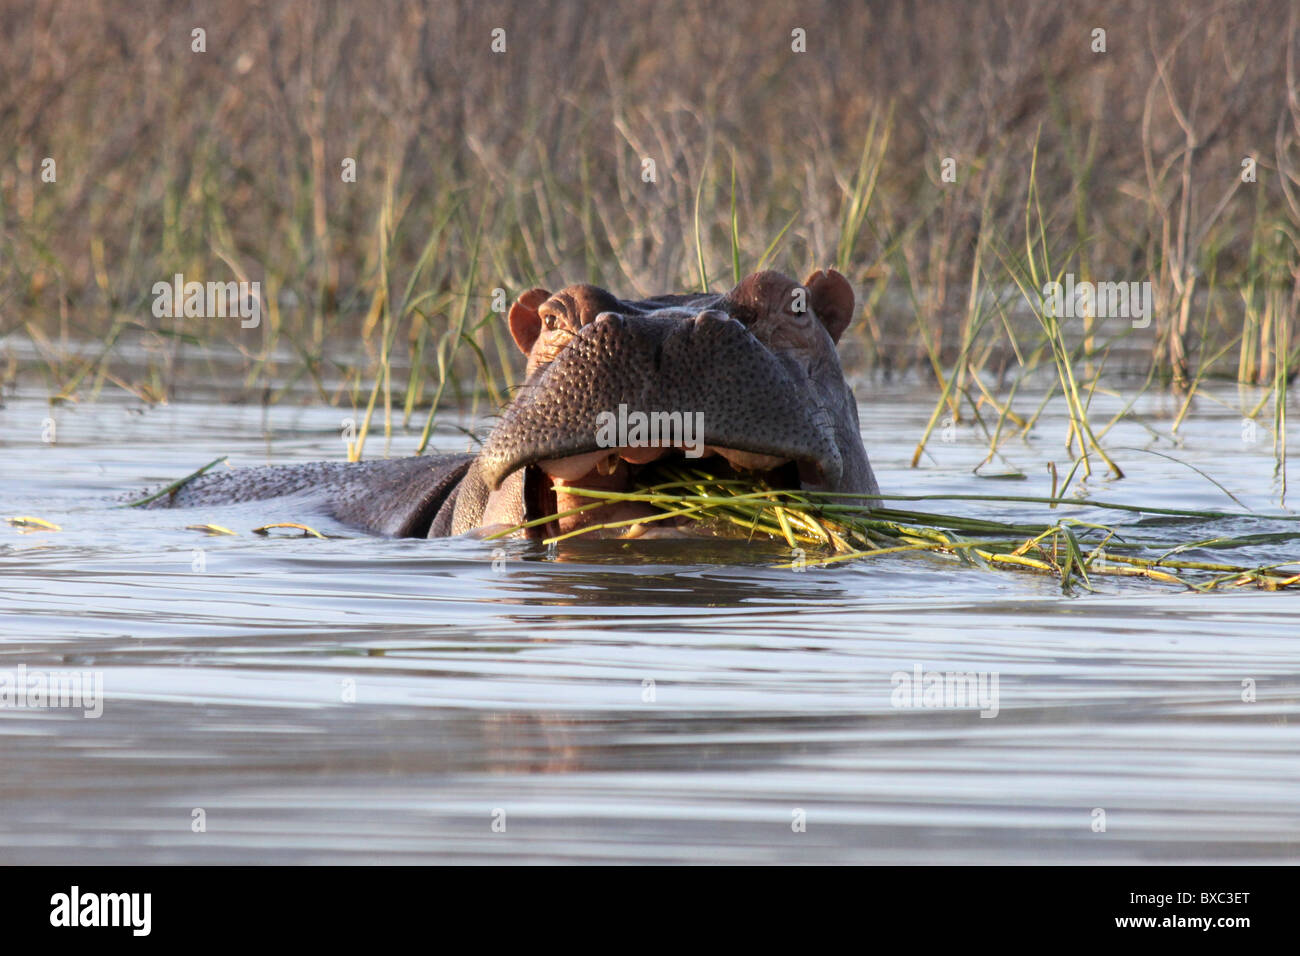 Hippopotamus Eating Vegetation Taken at Lake Chamo, Ethiopia Stock Photo